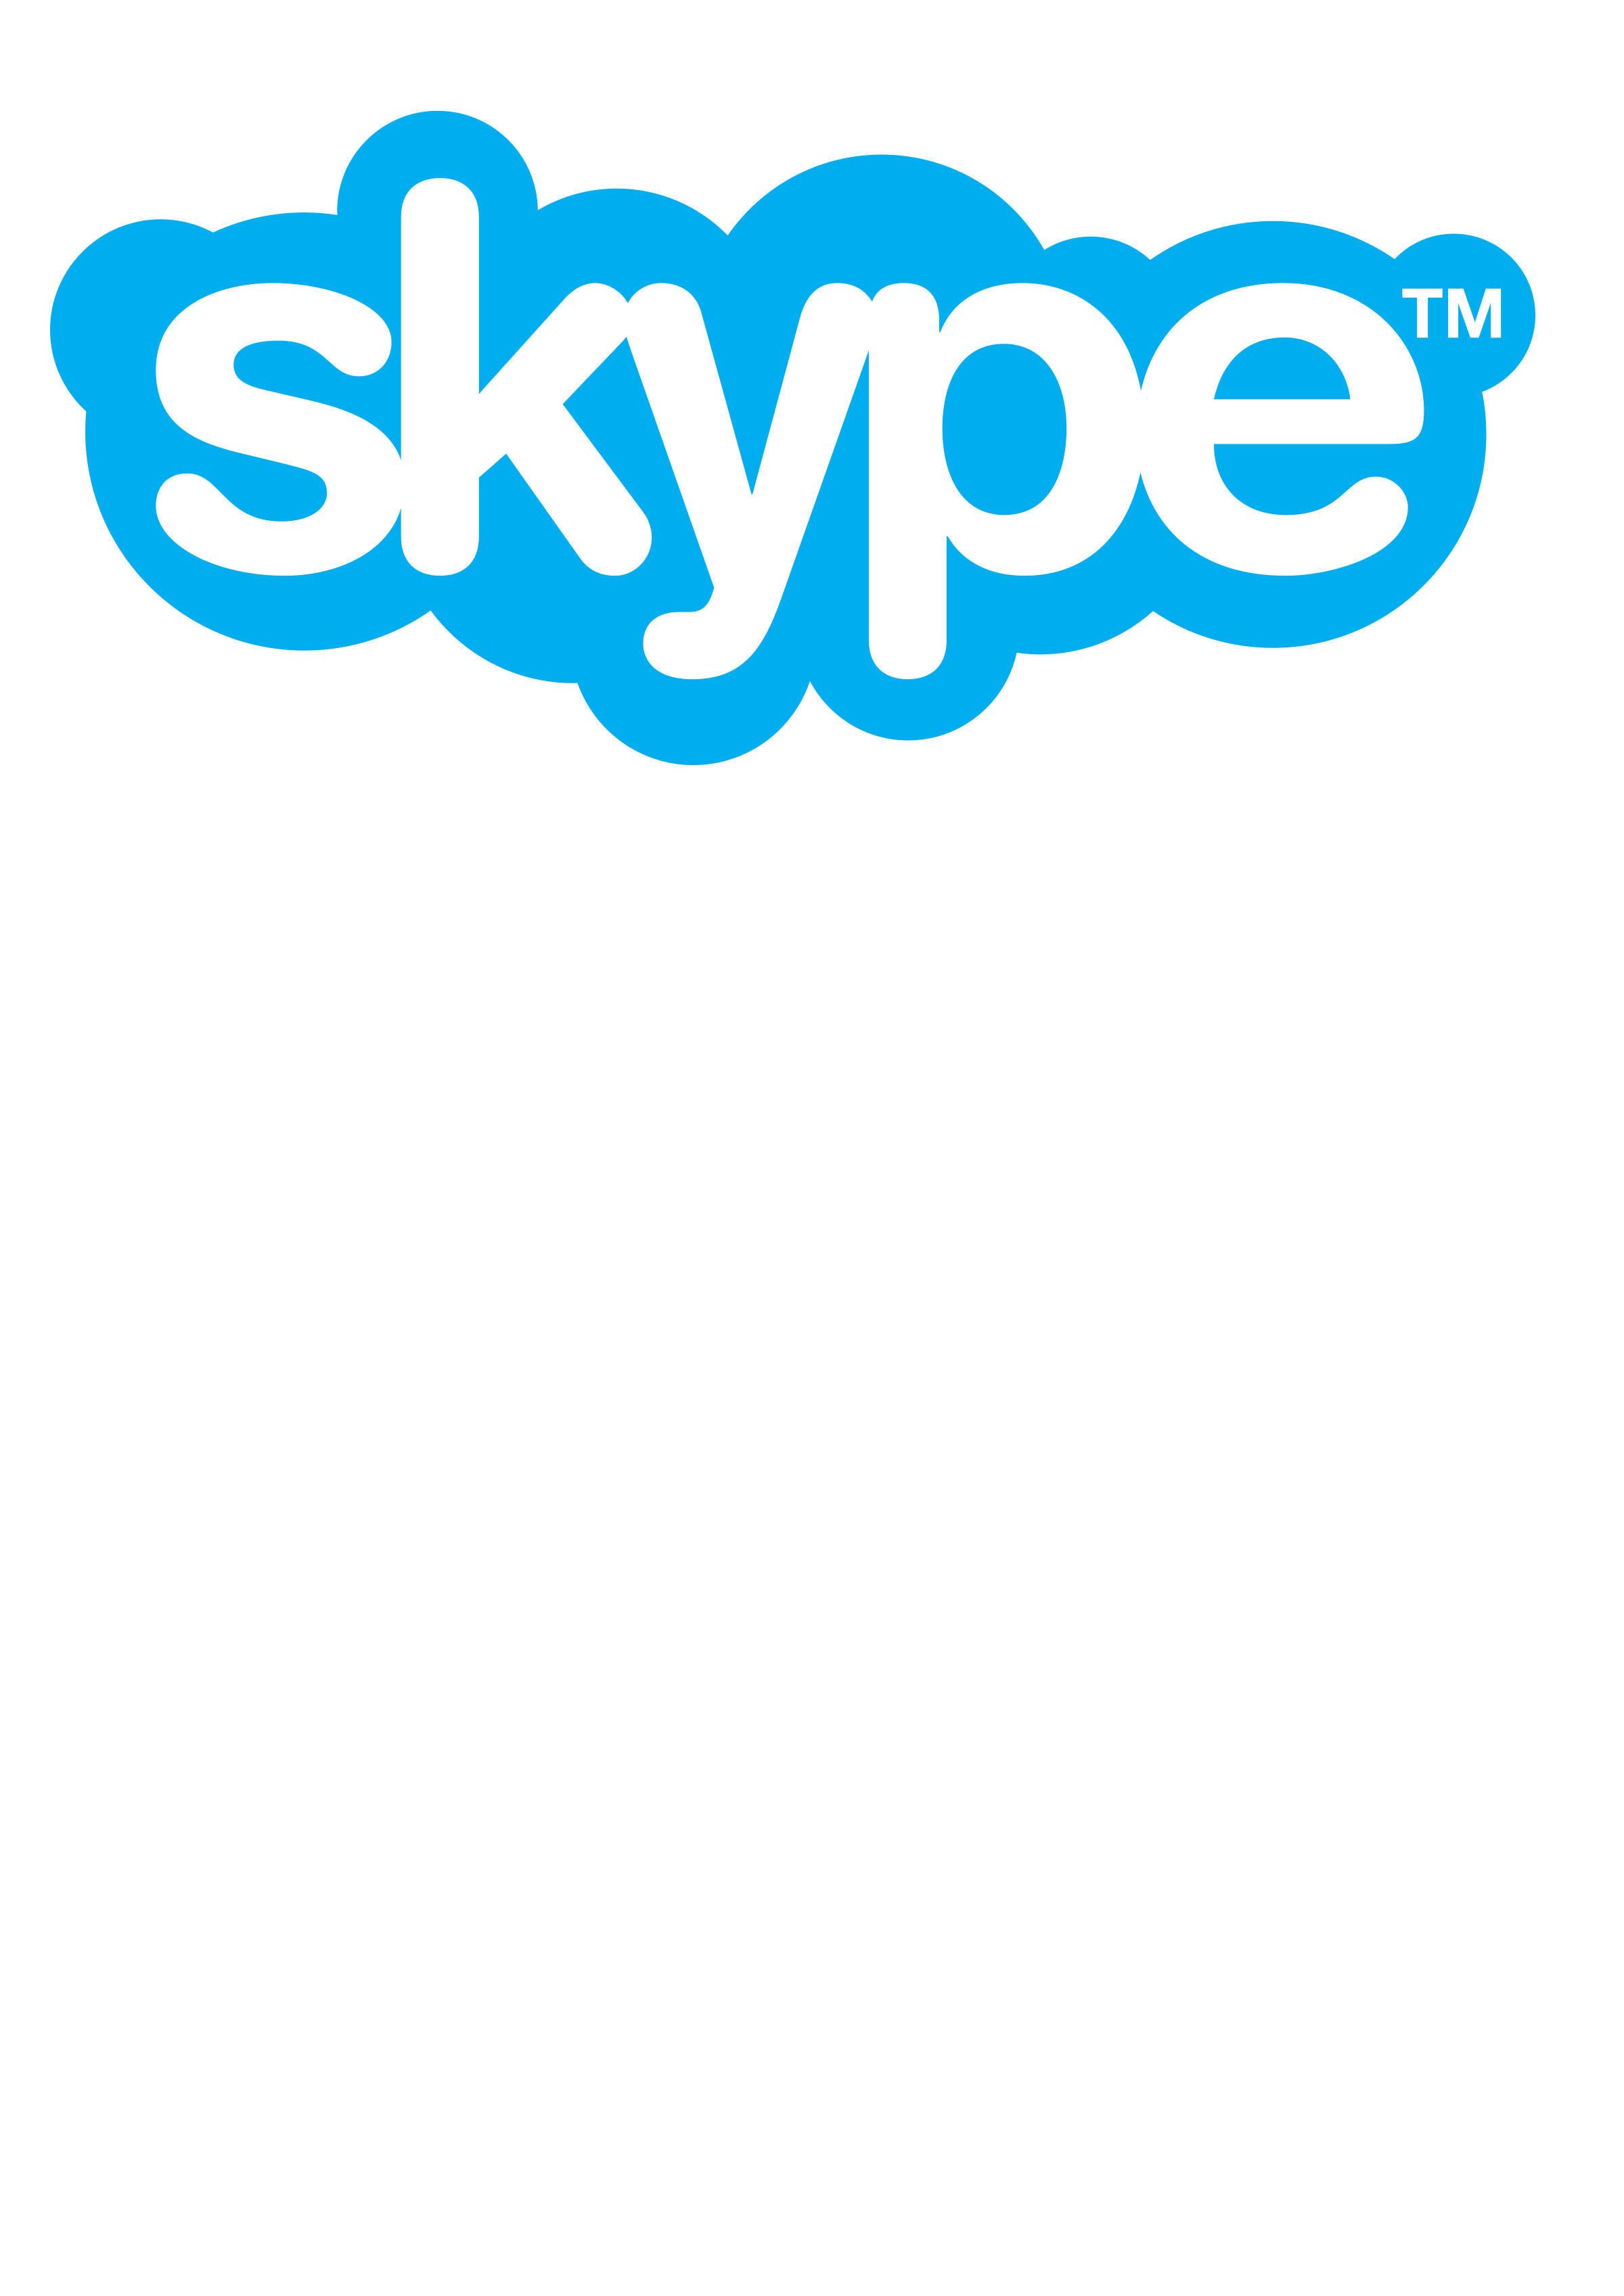 Skype Lessons - Skype Logo Tr